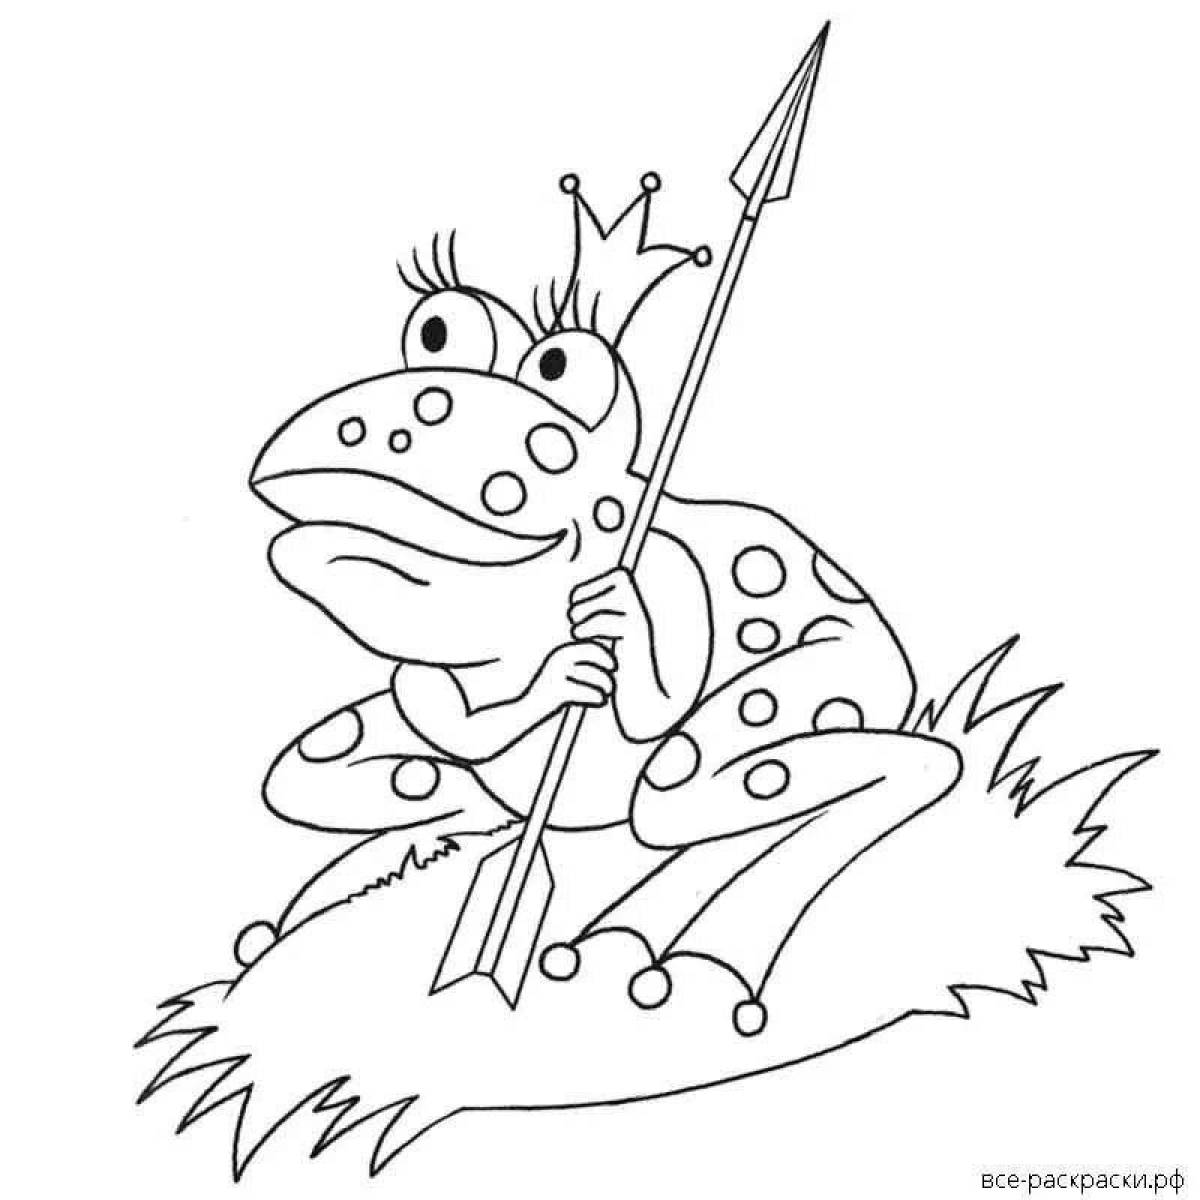 Лягушка из сказки Царевна лягушка раскраска